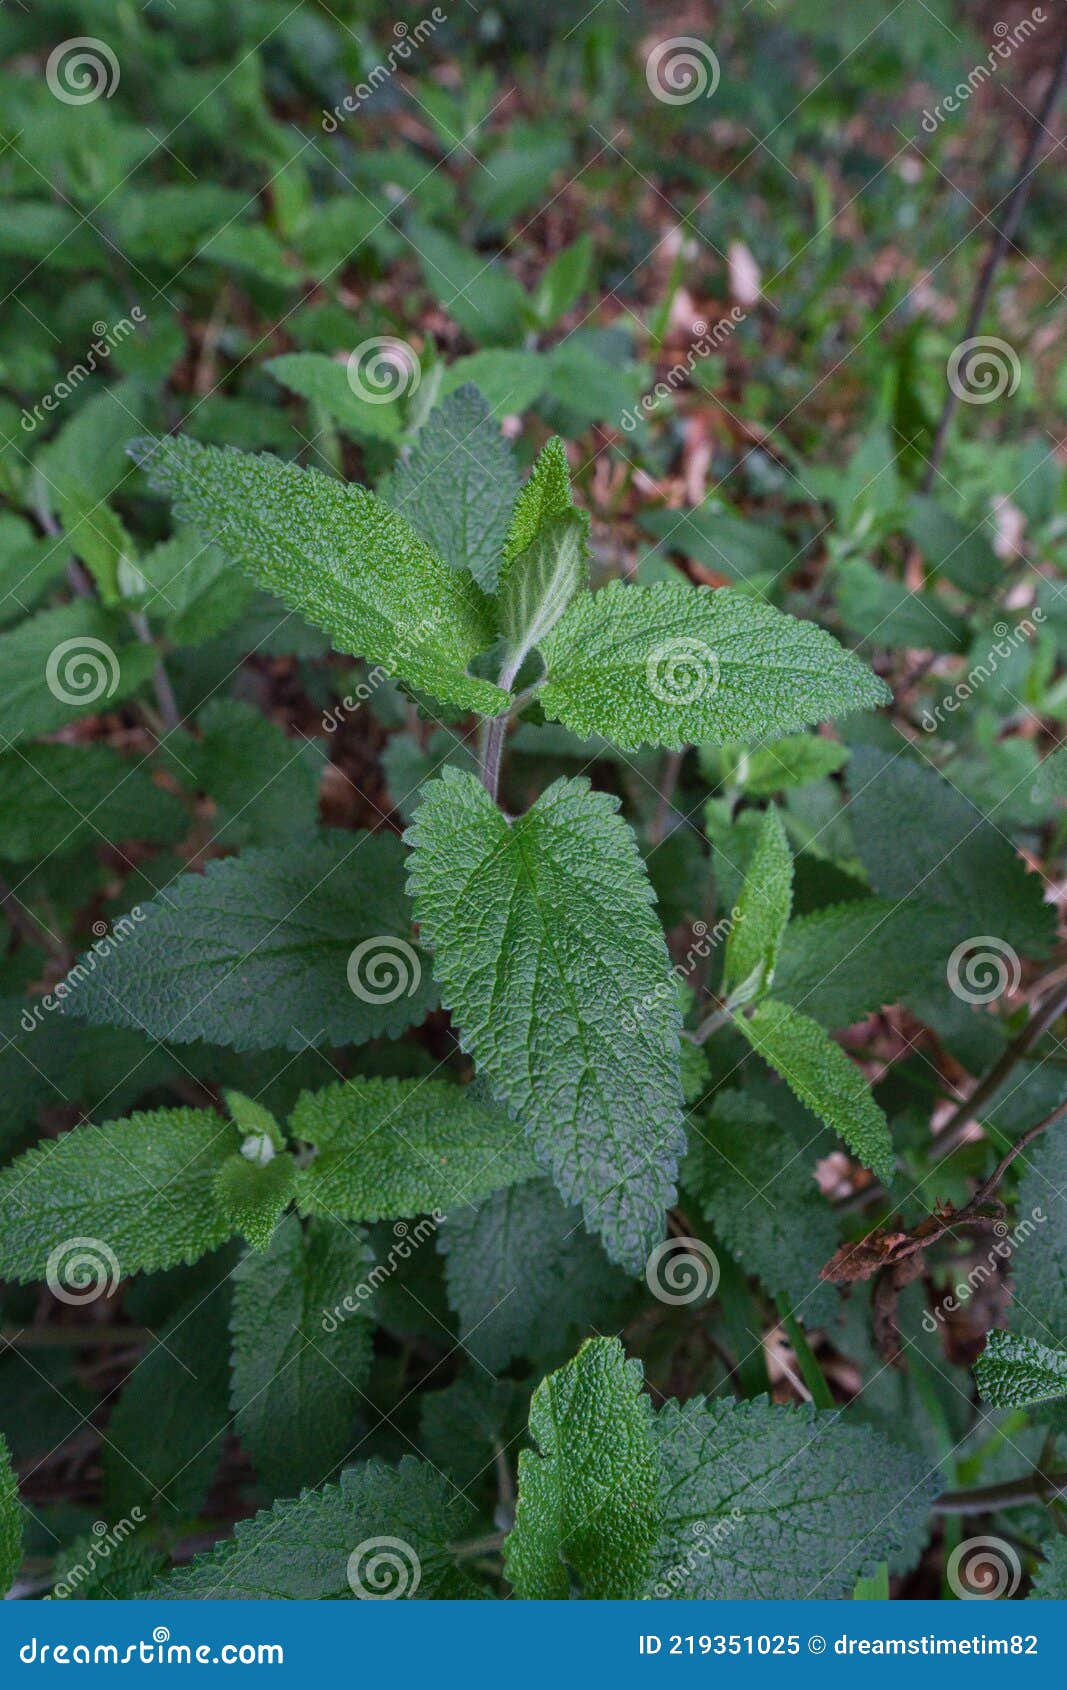 灰树木的常见名称是林地日耳曼人或木鼠尾草 是一种常年使用的草药库存图片 图片包括有开花的 英国